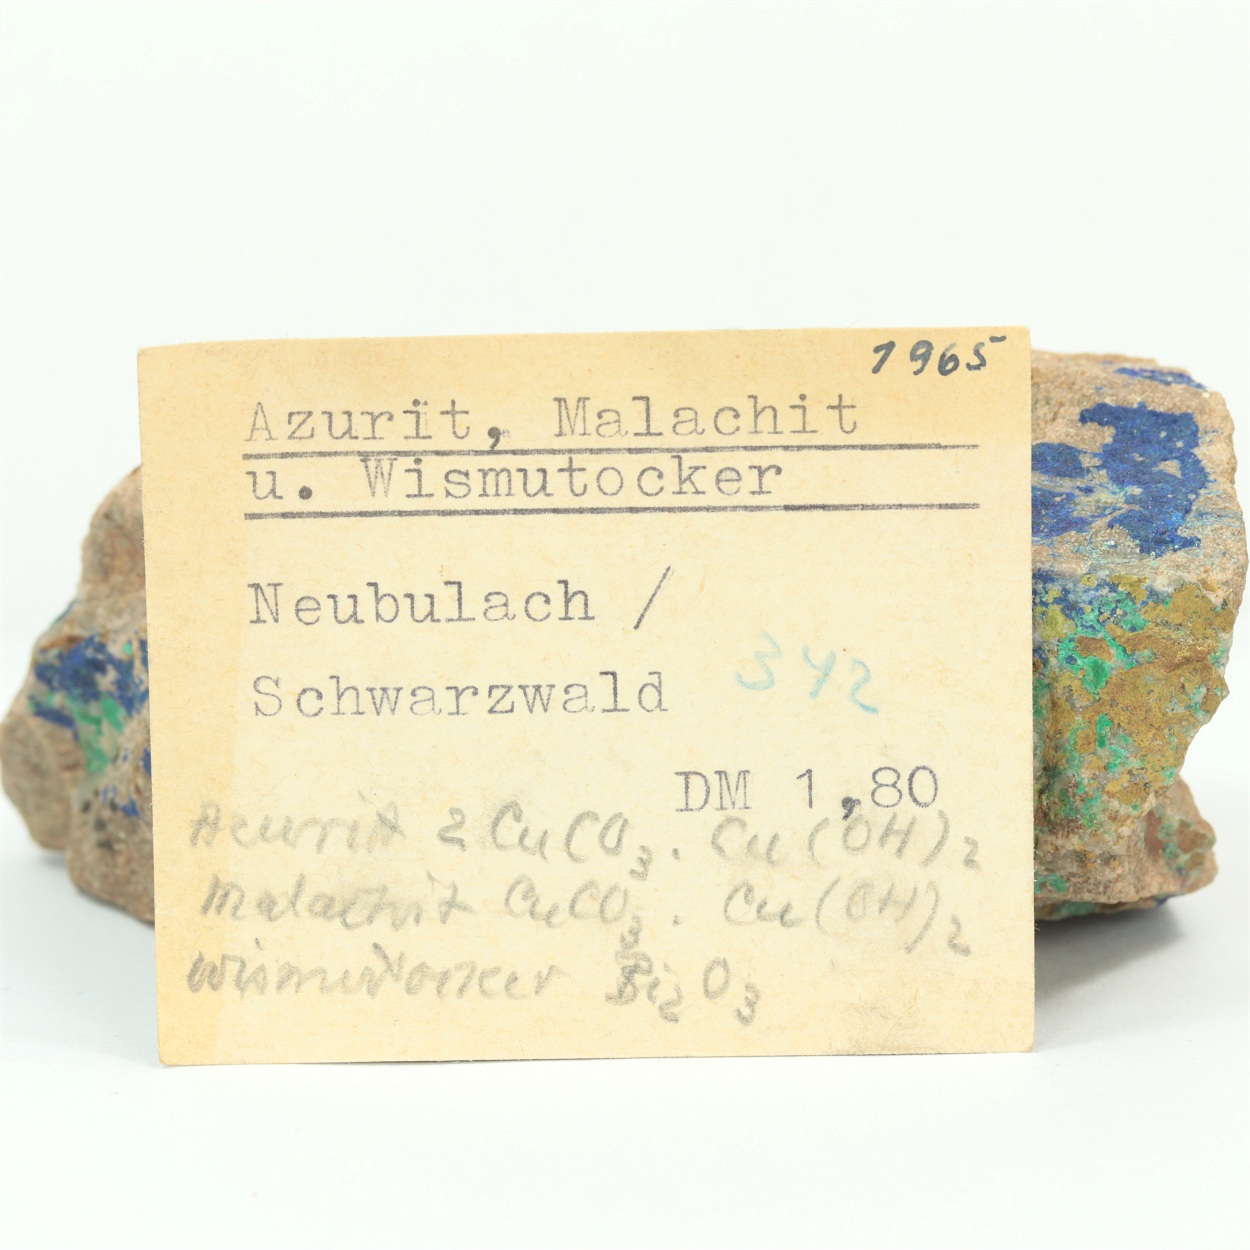 Azurite With Bismuth Ochre & Malachite